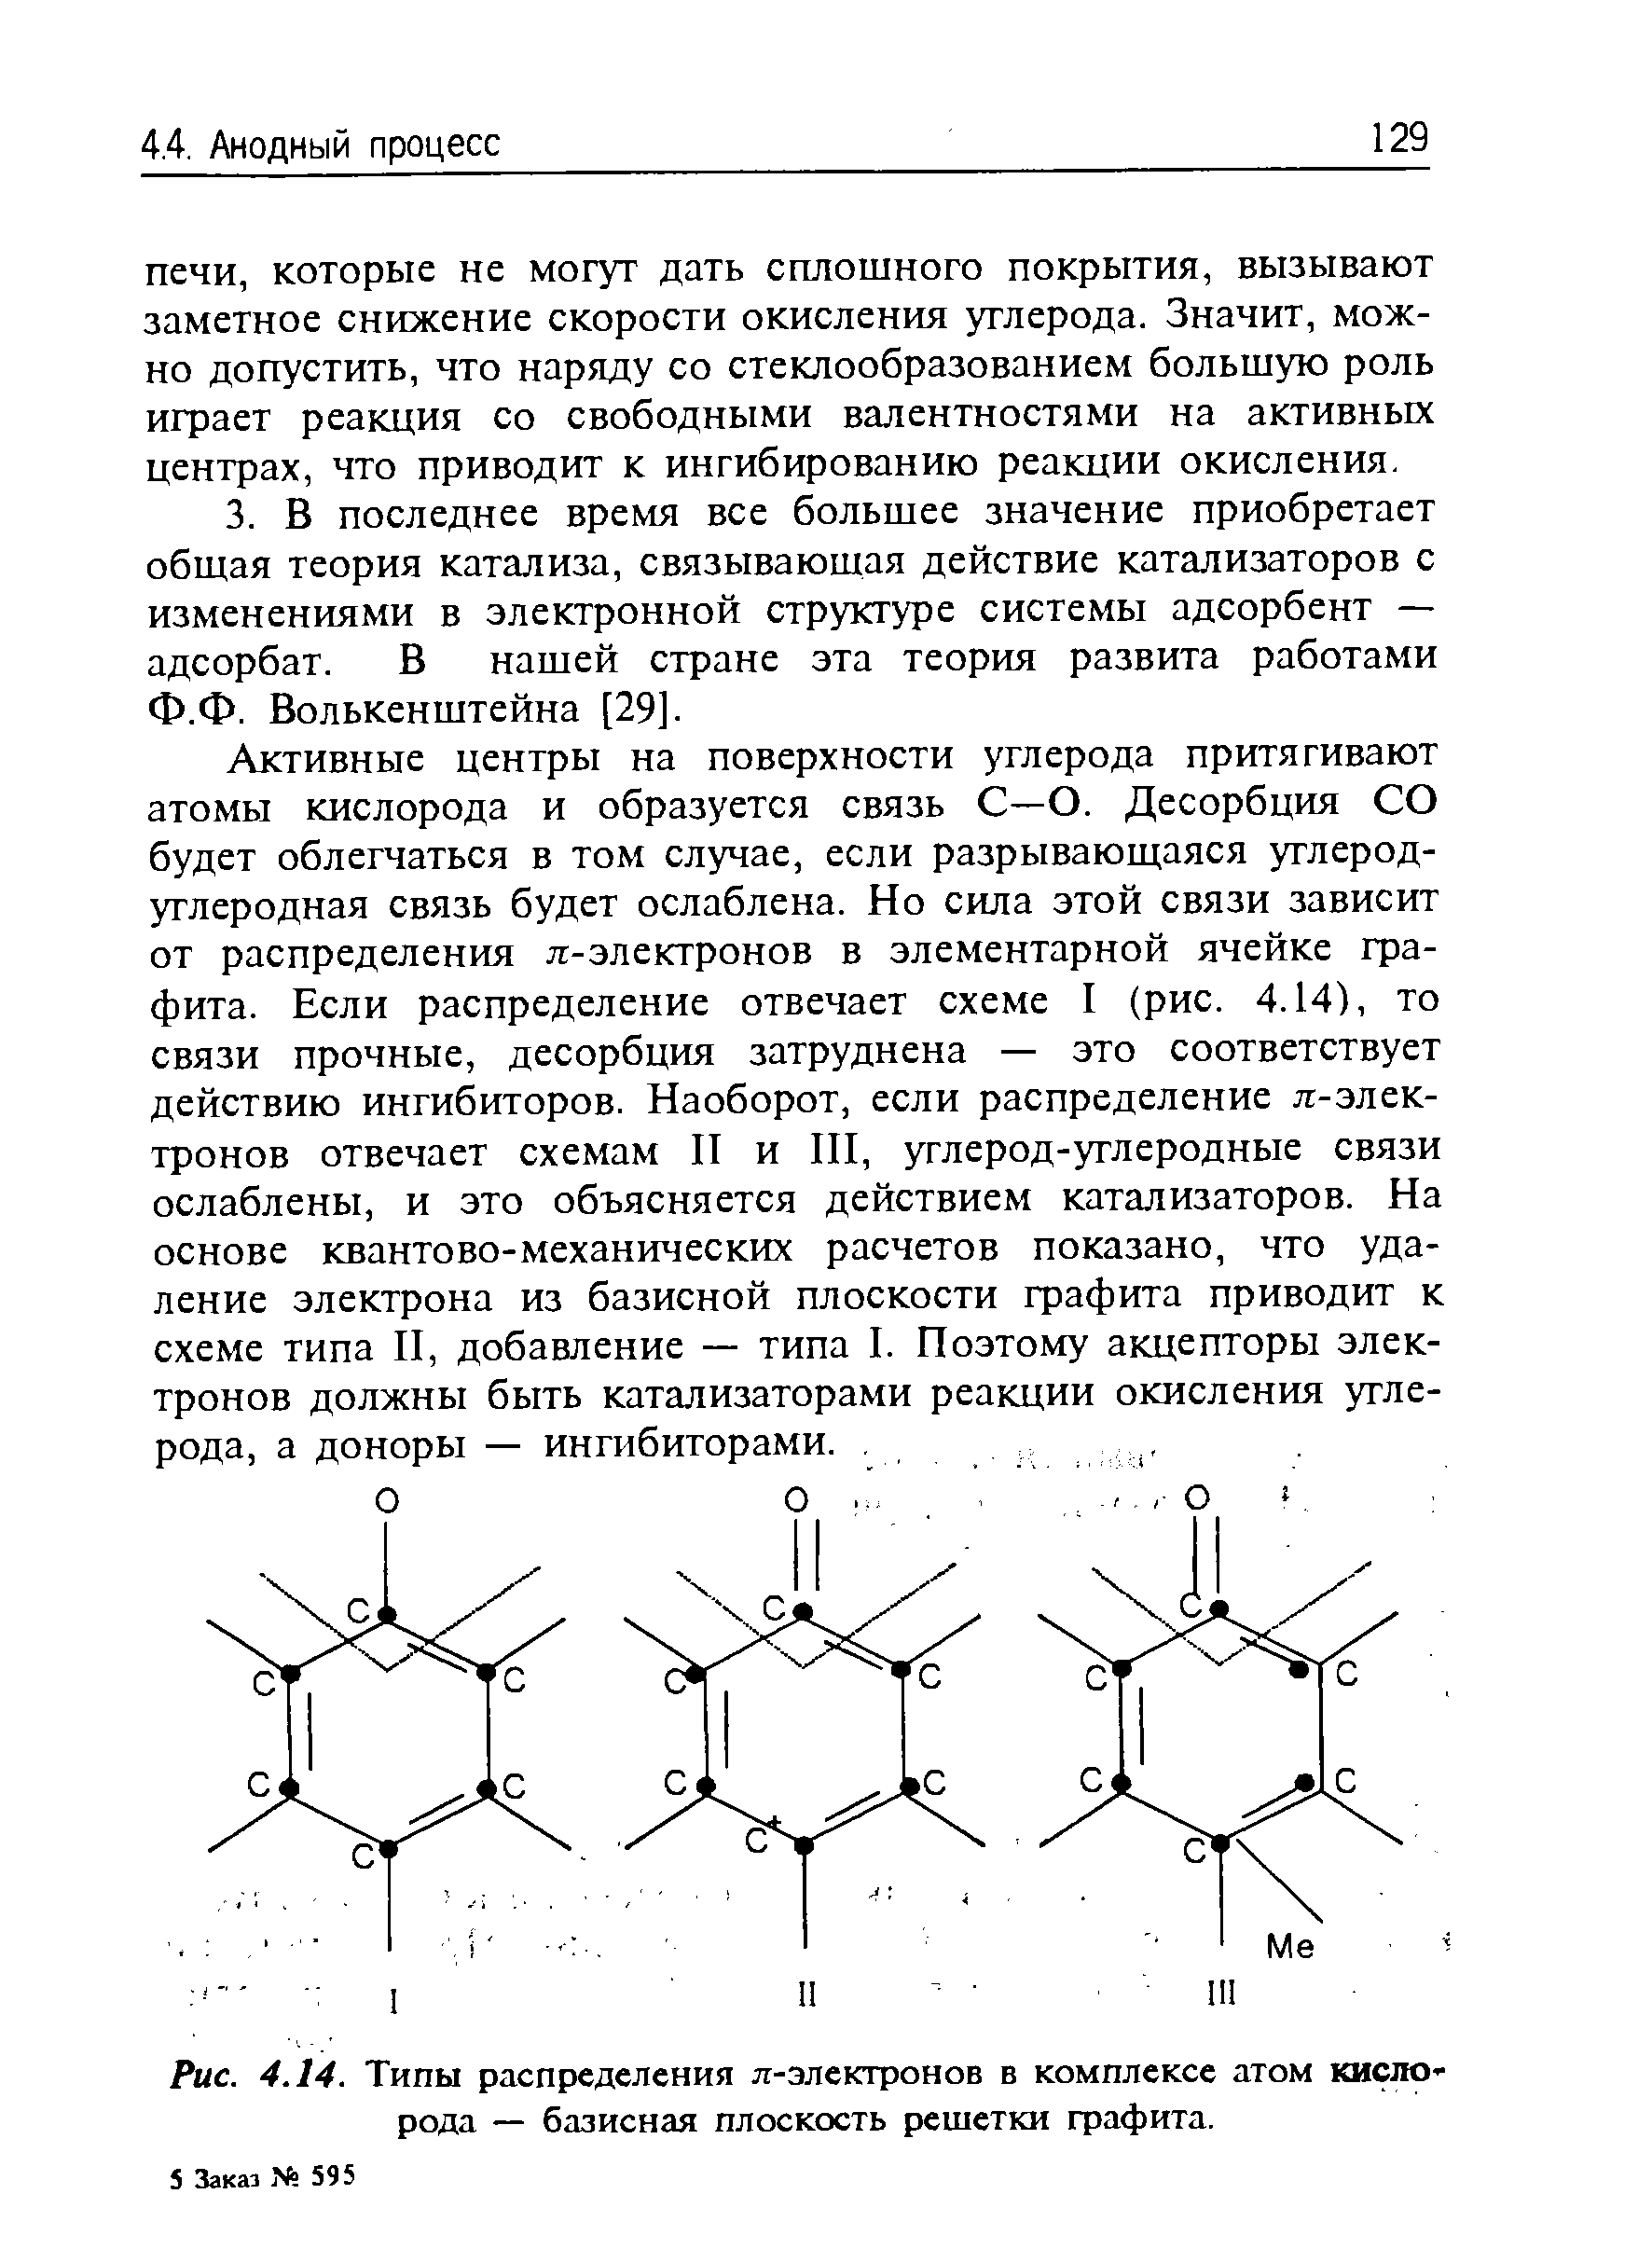 Рис. 4.14. Типы распределения л-электронов в комплексе атом кисло рода — базисная плоскость решетки фафита.
